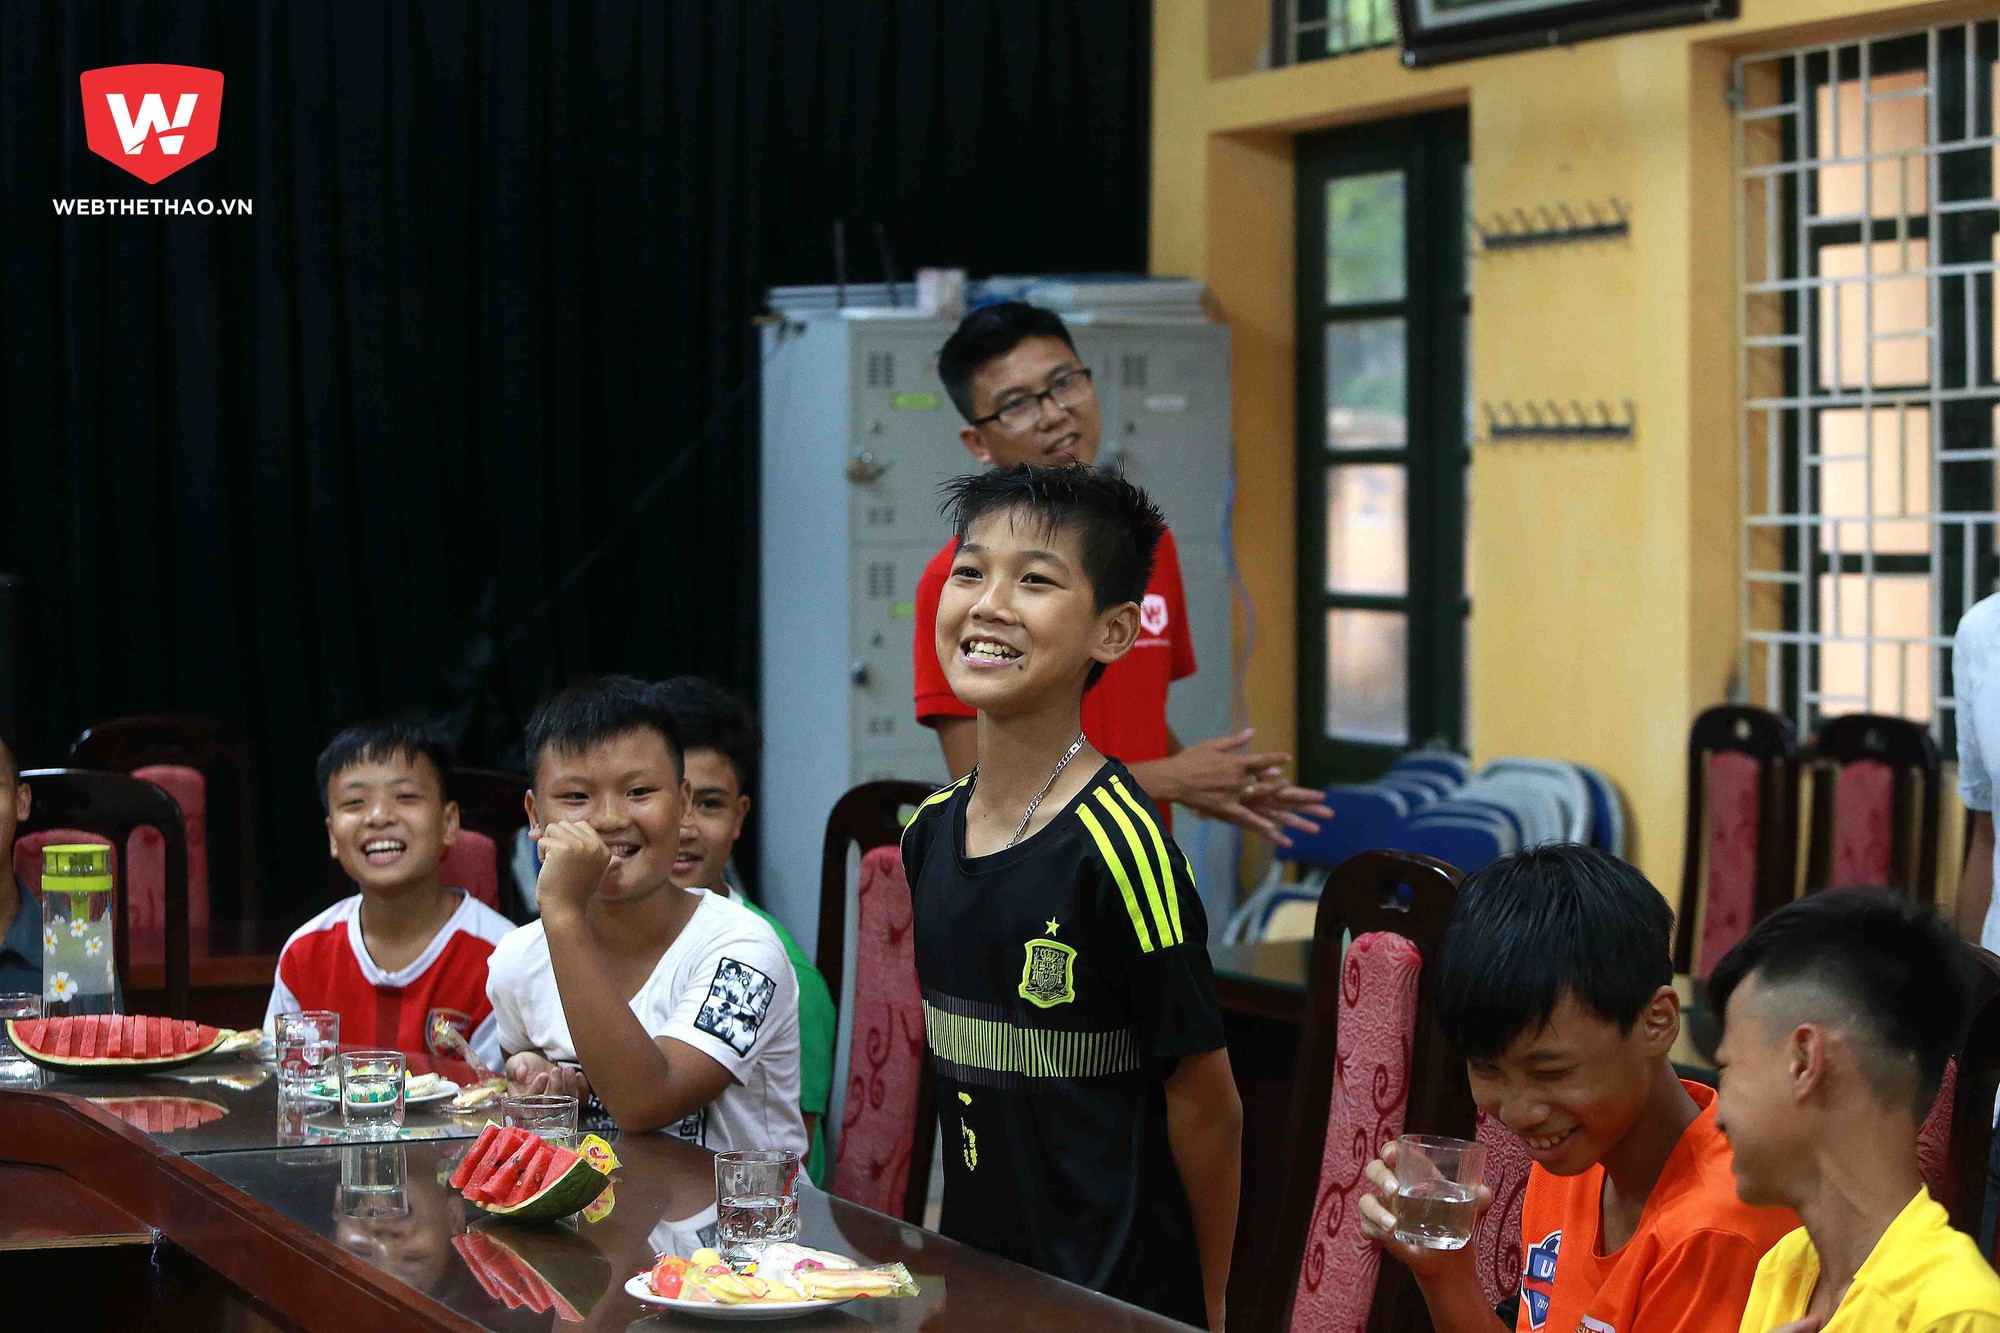 ...thủ môn Trần văn Thái say sưa giới thiệu đến các đội bạn về ngôi trường cũng như đội bóng yêu dấu của mình và cũng không quên gửi đến các đội những lời chúc thân ái.